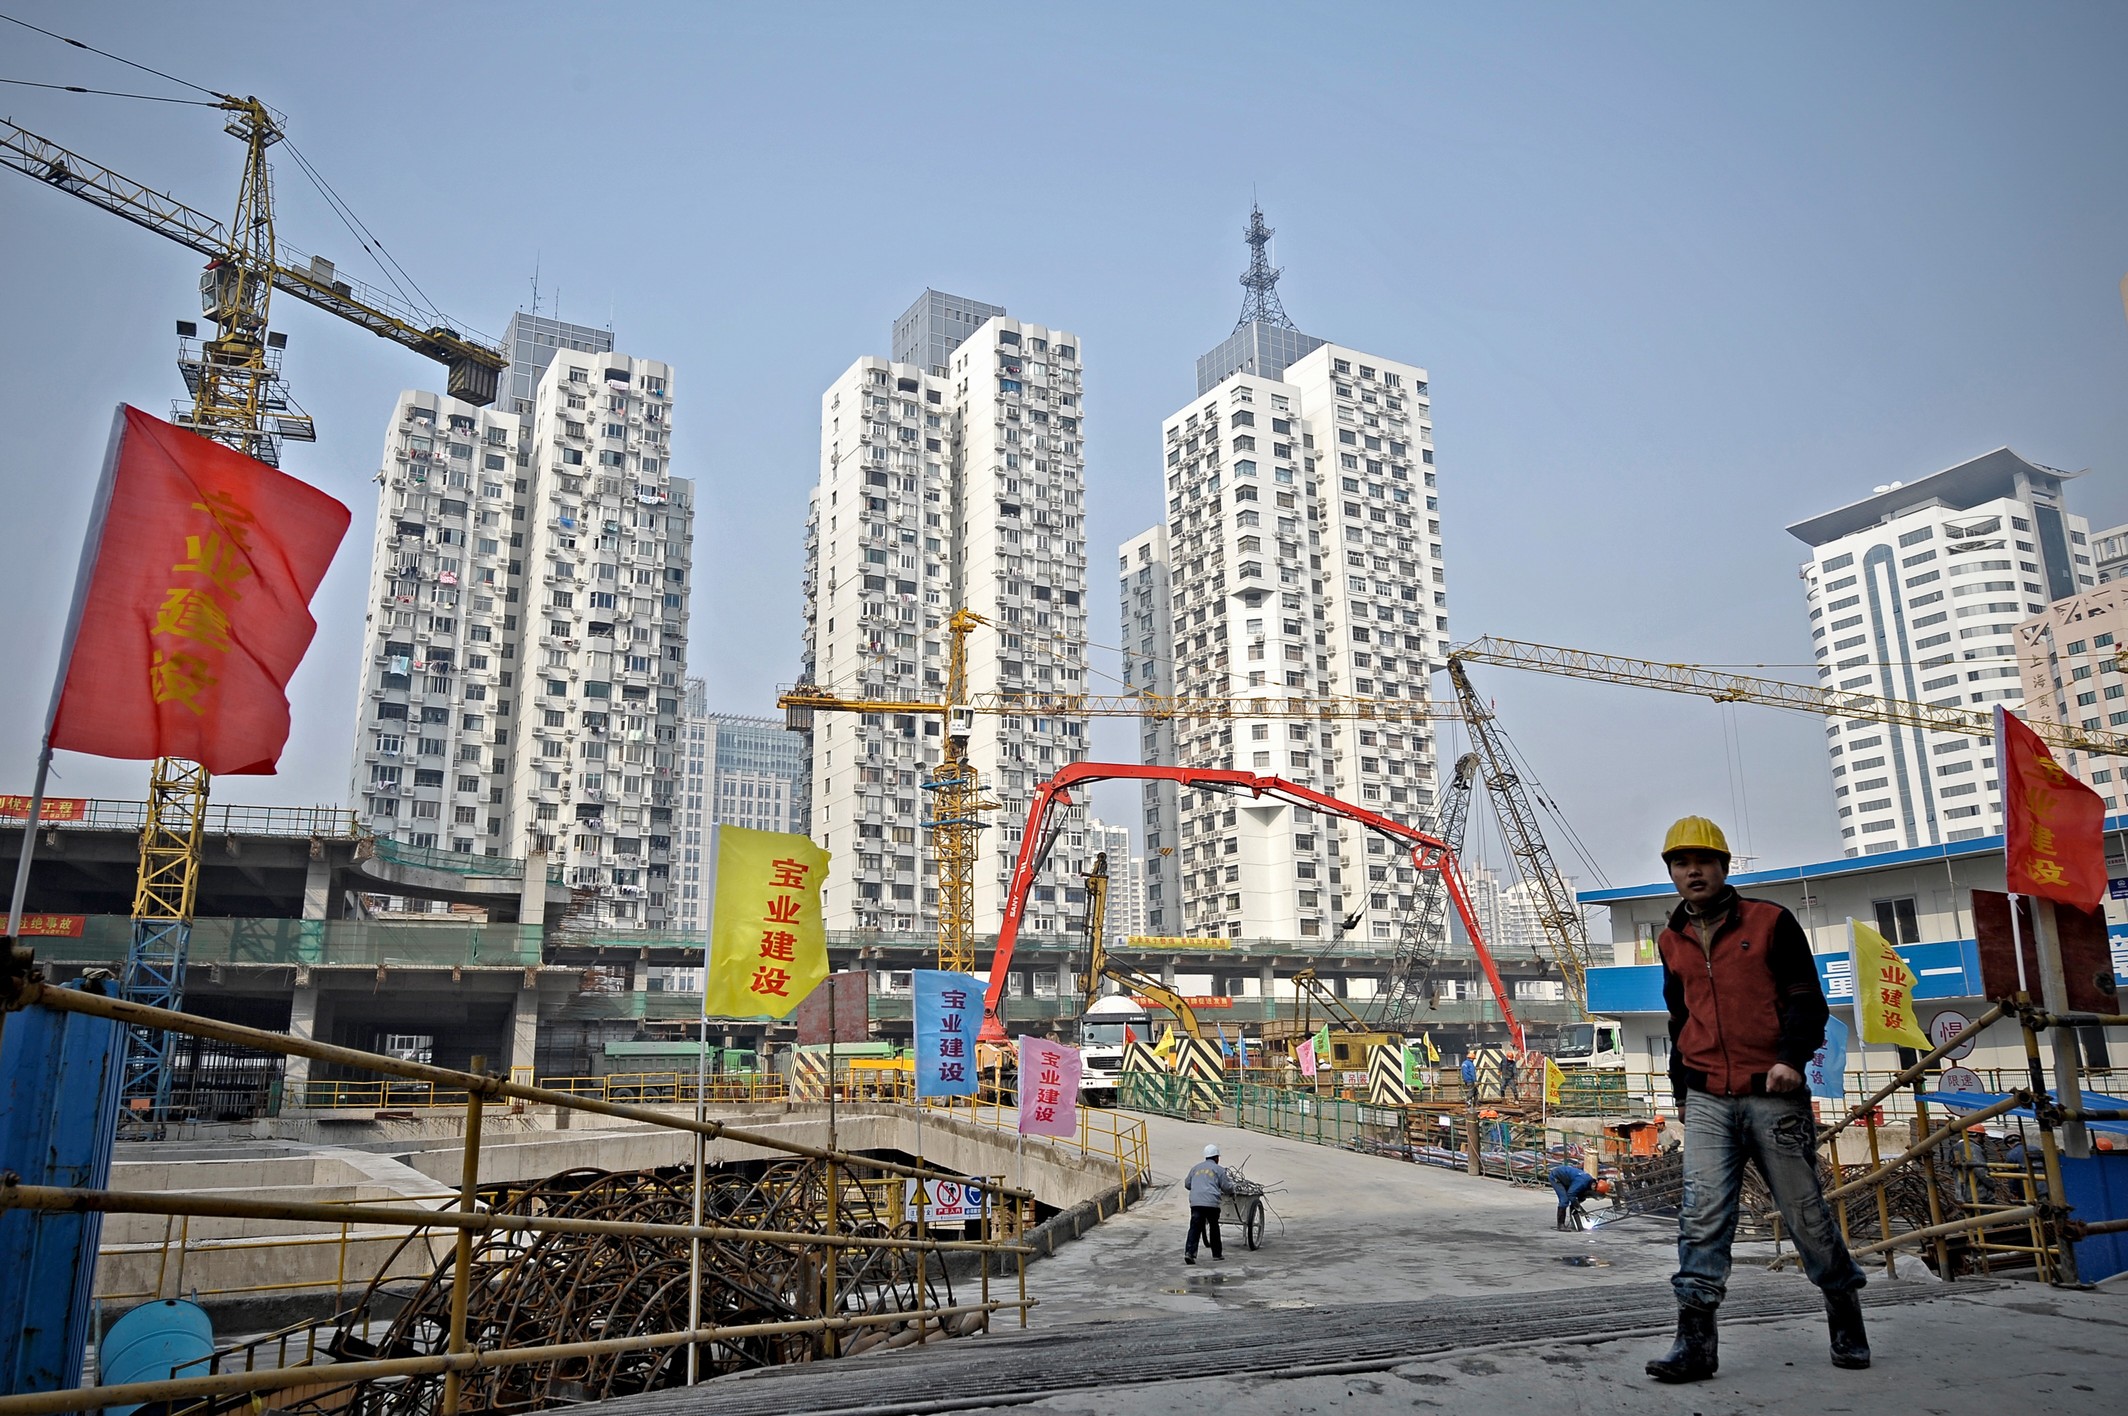 中国信贷刺激经济的效果在递减，且浮滥资金到处流窜，导致房地产飙涨、经济失衡。